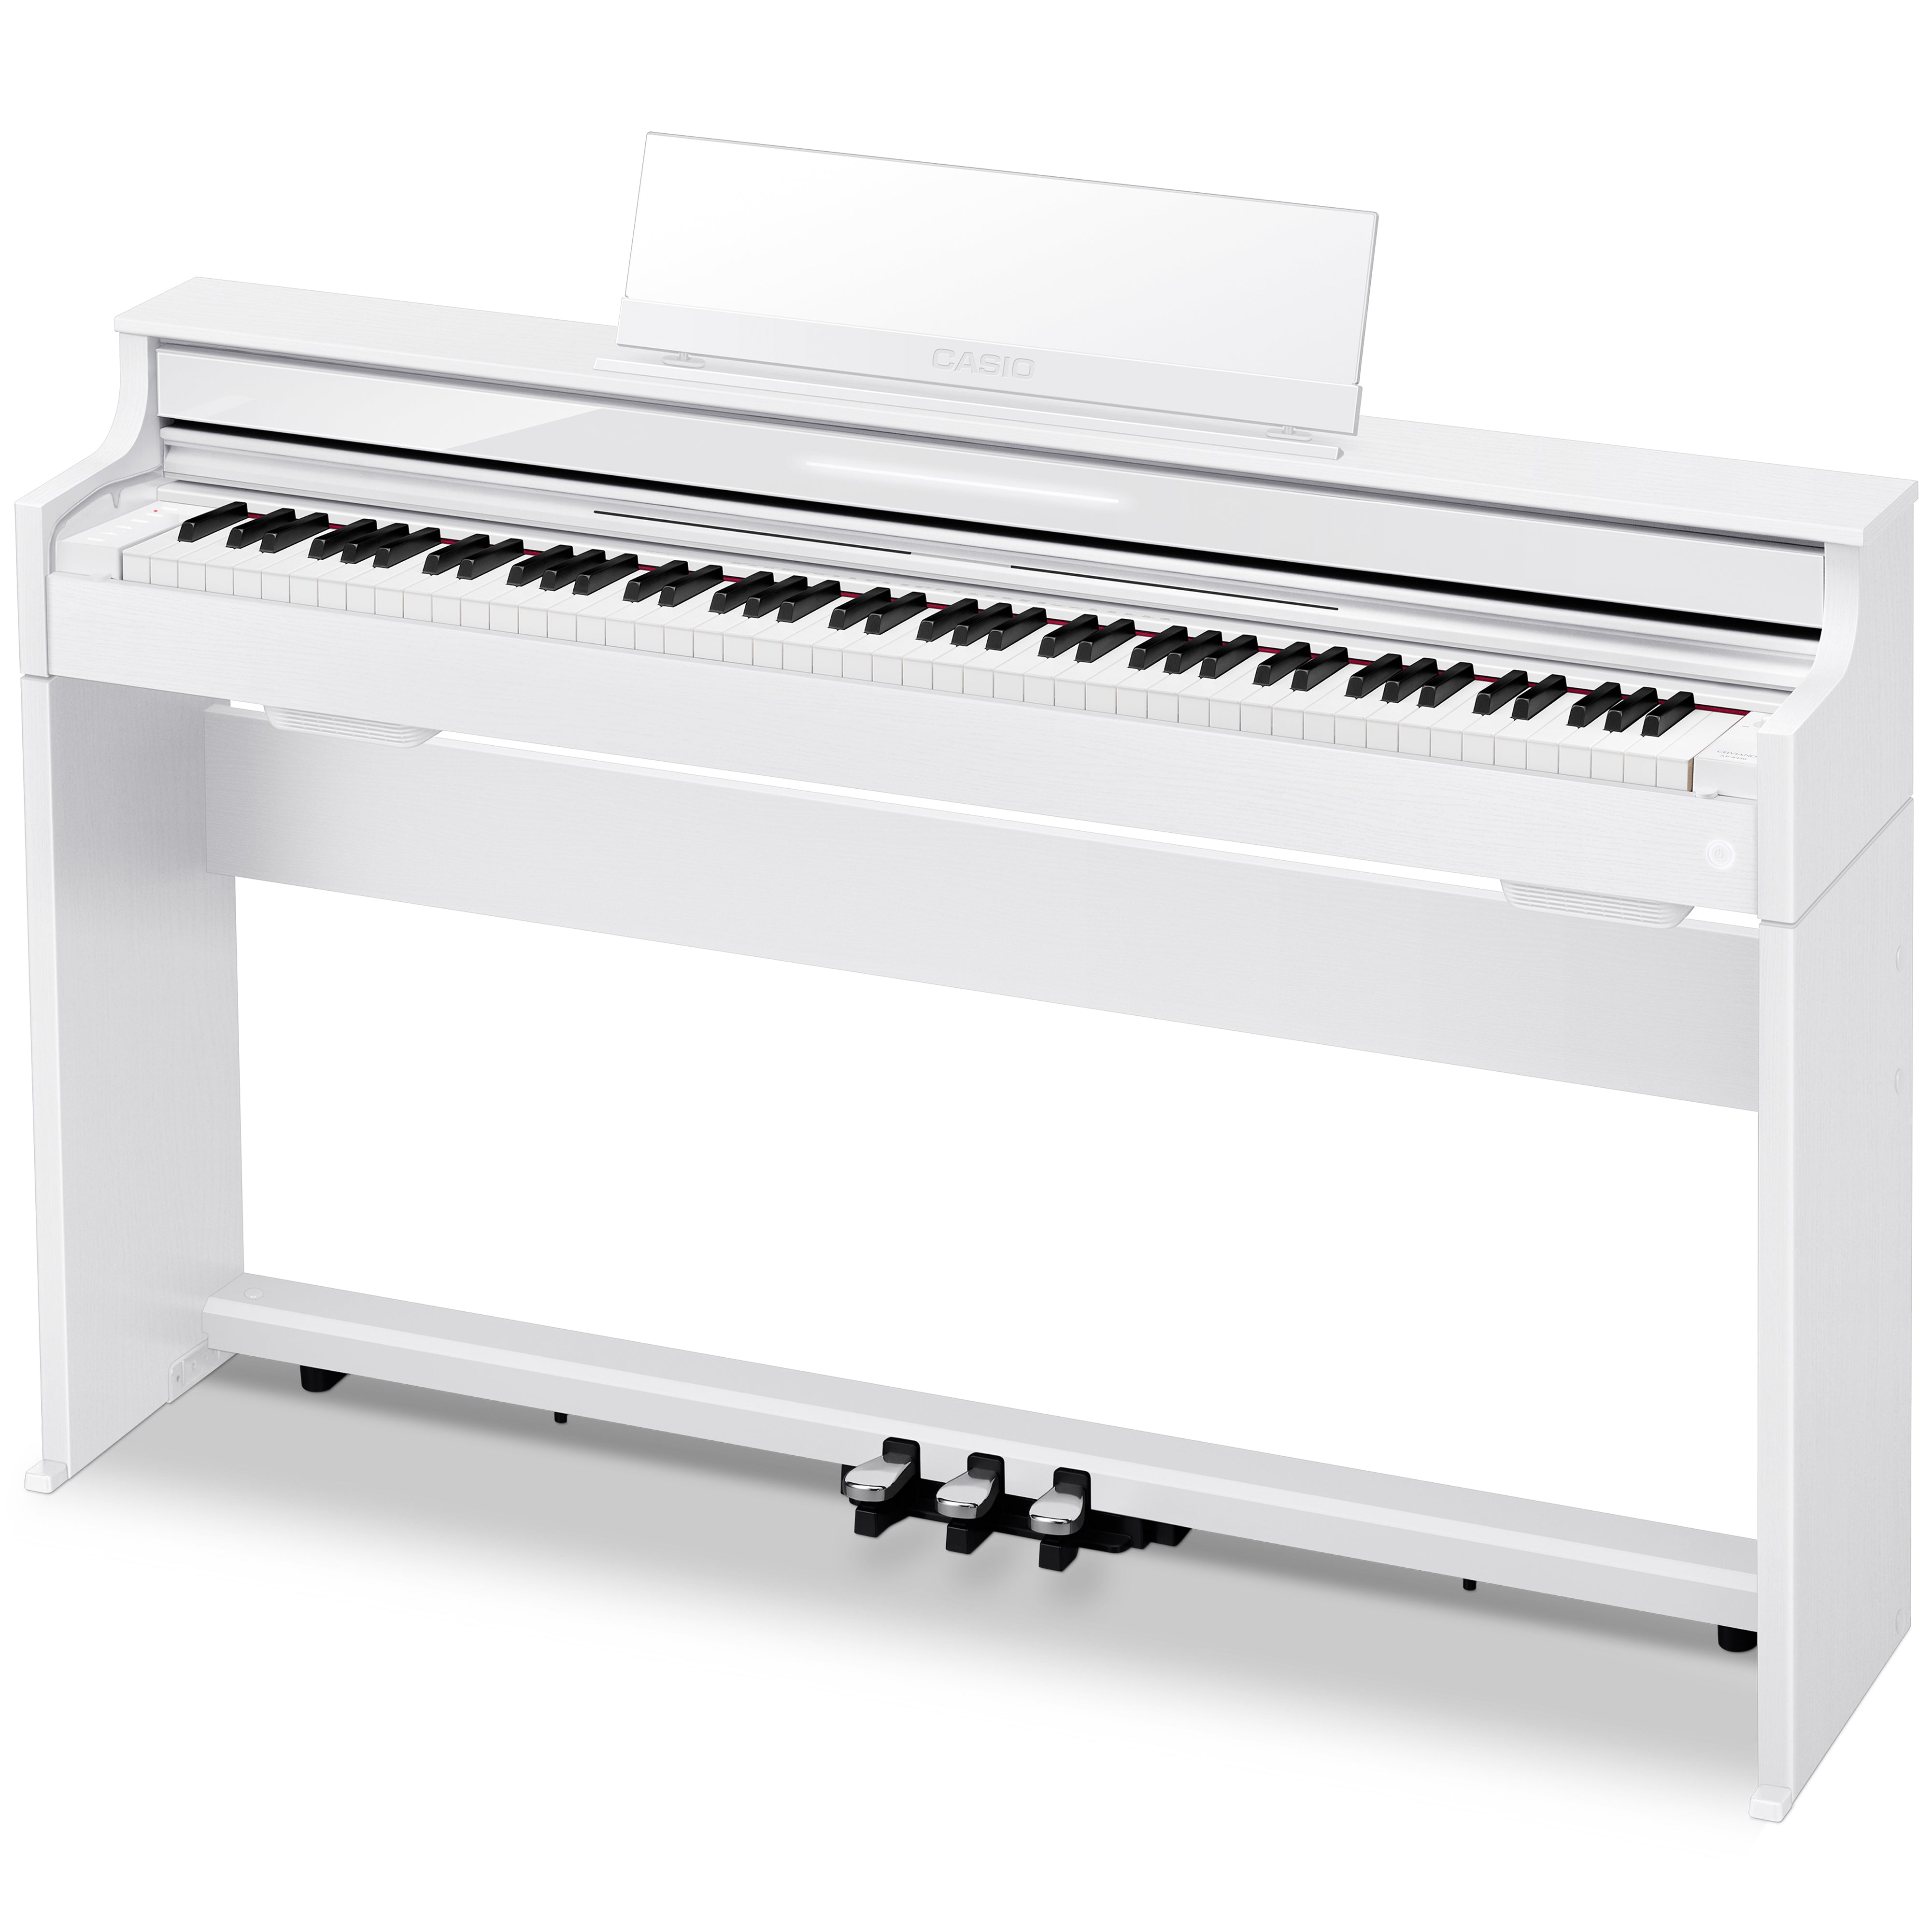 Casio Celviano AP-S450 Digital Piano - White - facing left